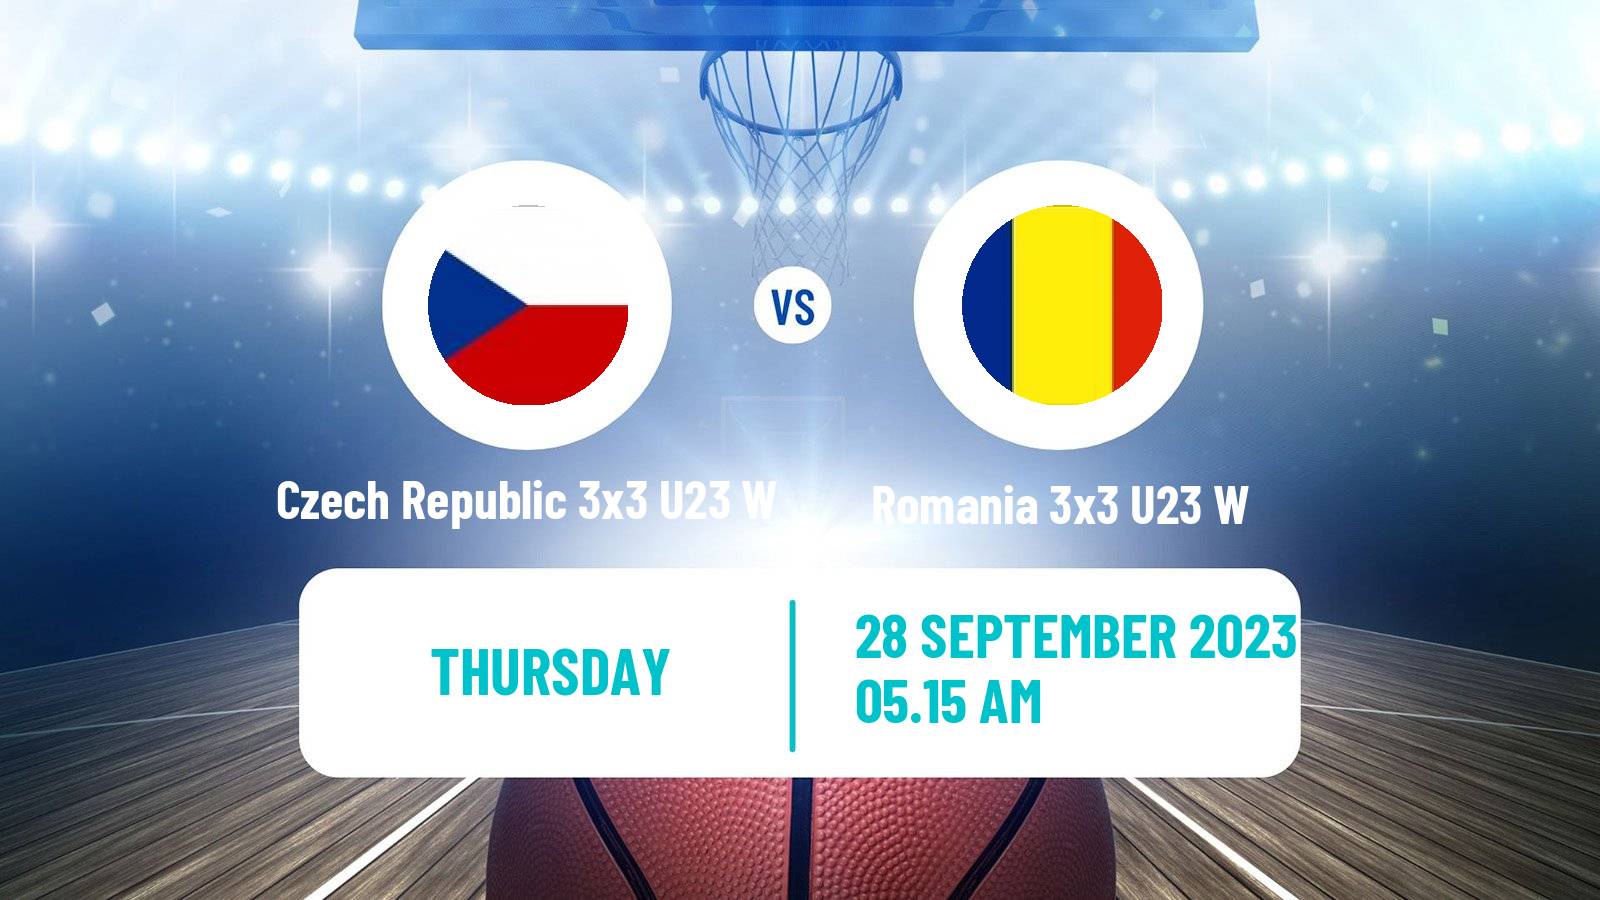 Basketball World Cup Basketball 3x3 U23 Women Czech Republic 3x3 U23 W - Romania 3x3 U23 W